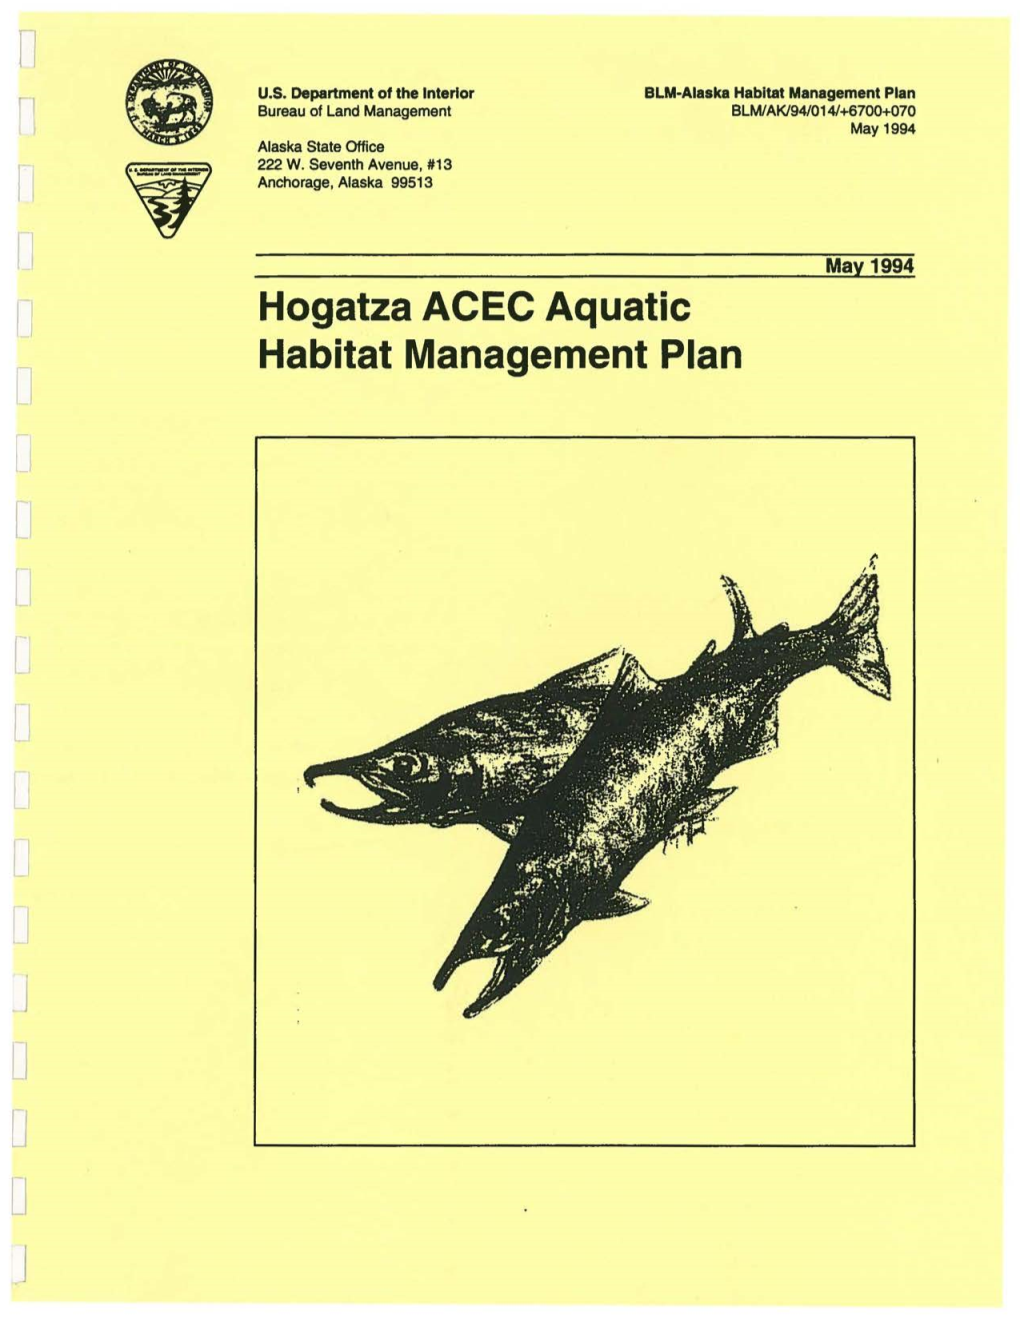 Hogatza River ACEC Aquatic Habitat Management Plan